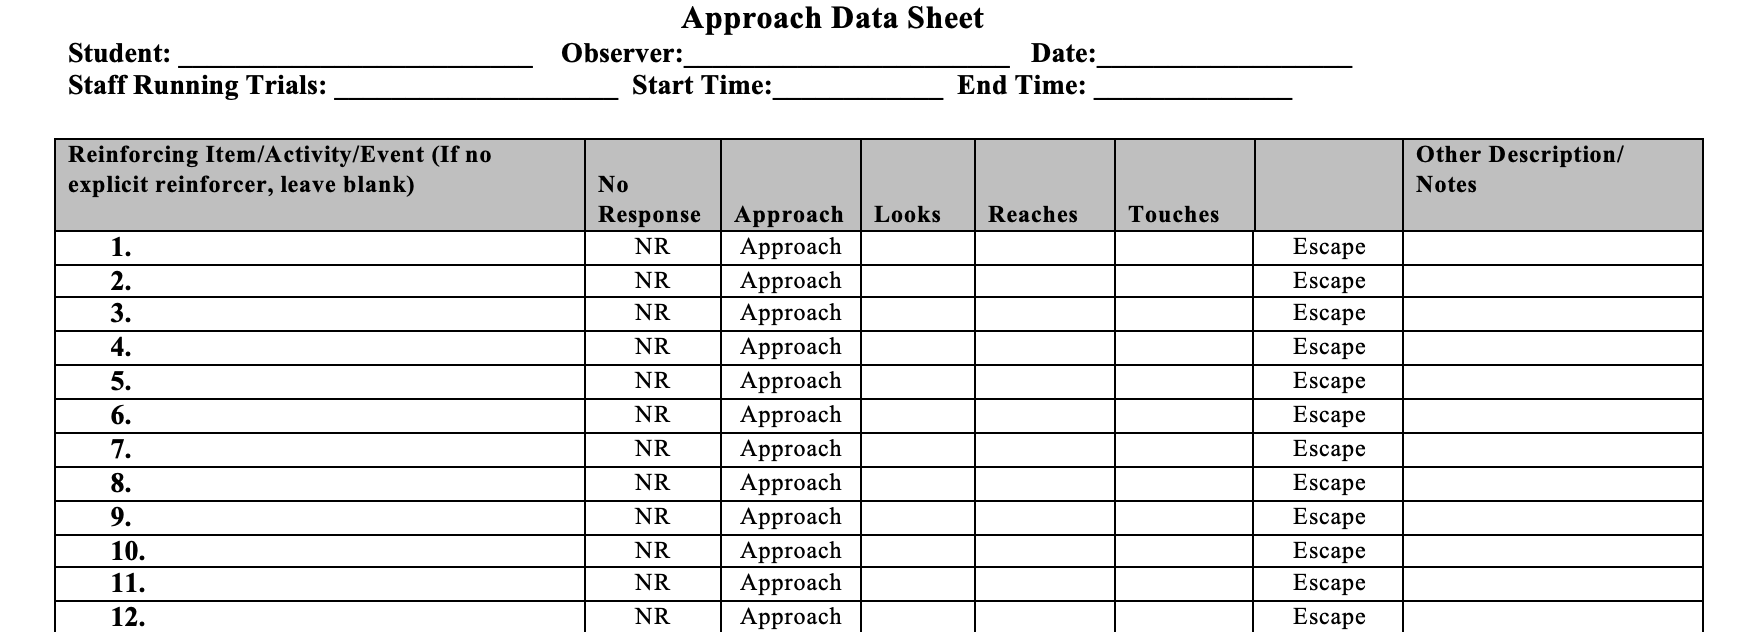 Approach Data Sheet